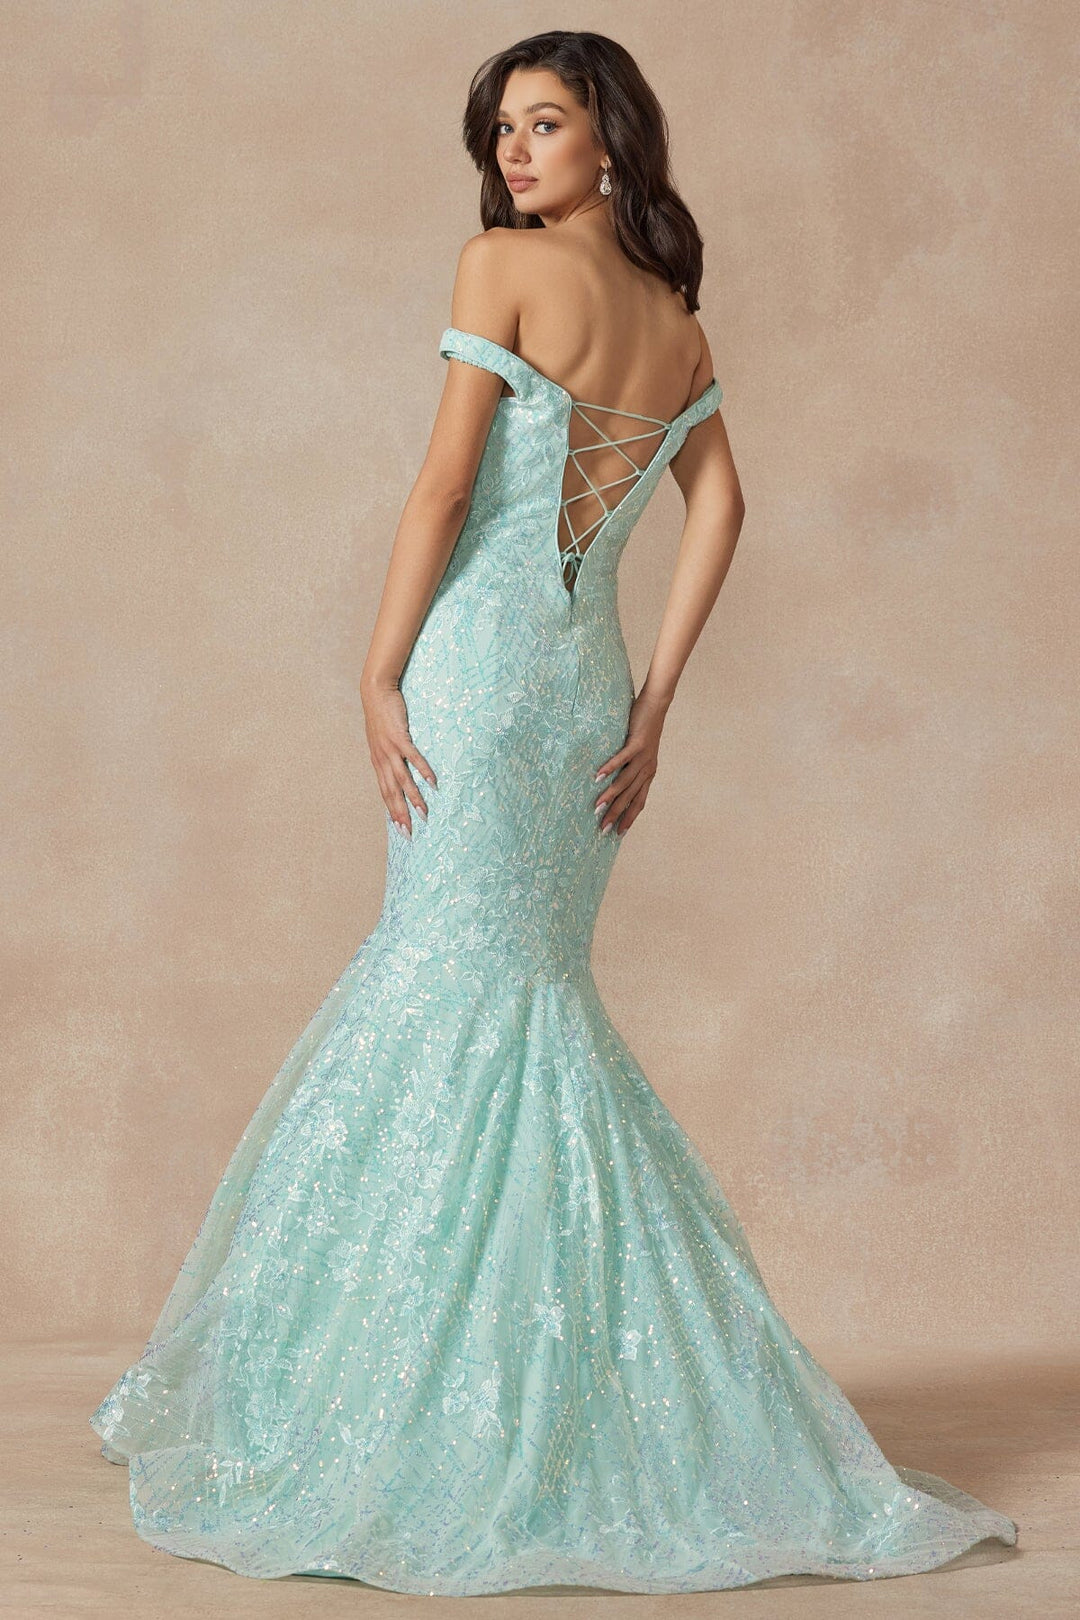 Embellished Off Shoulder Mermaid Dress by Juliet 2412